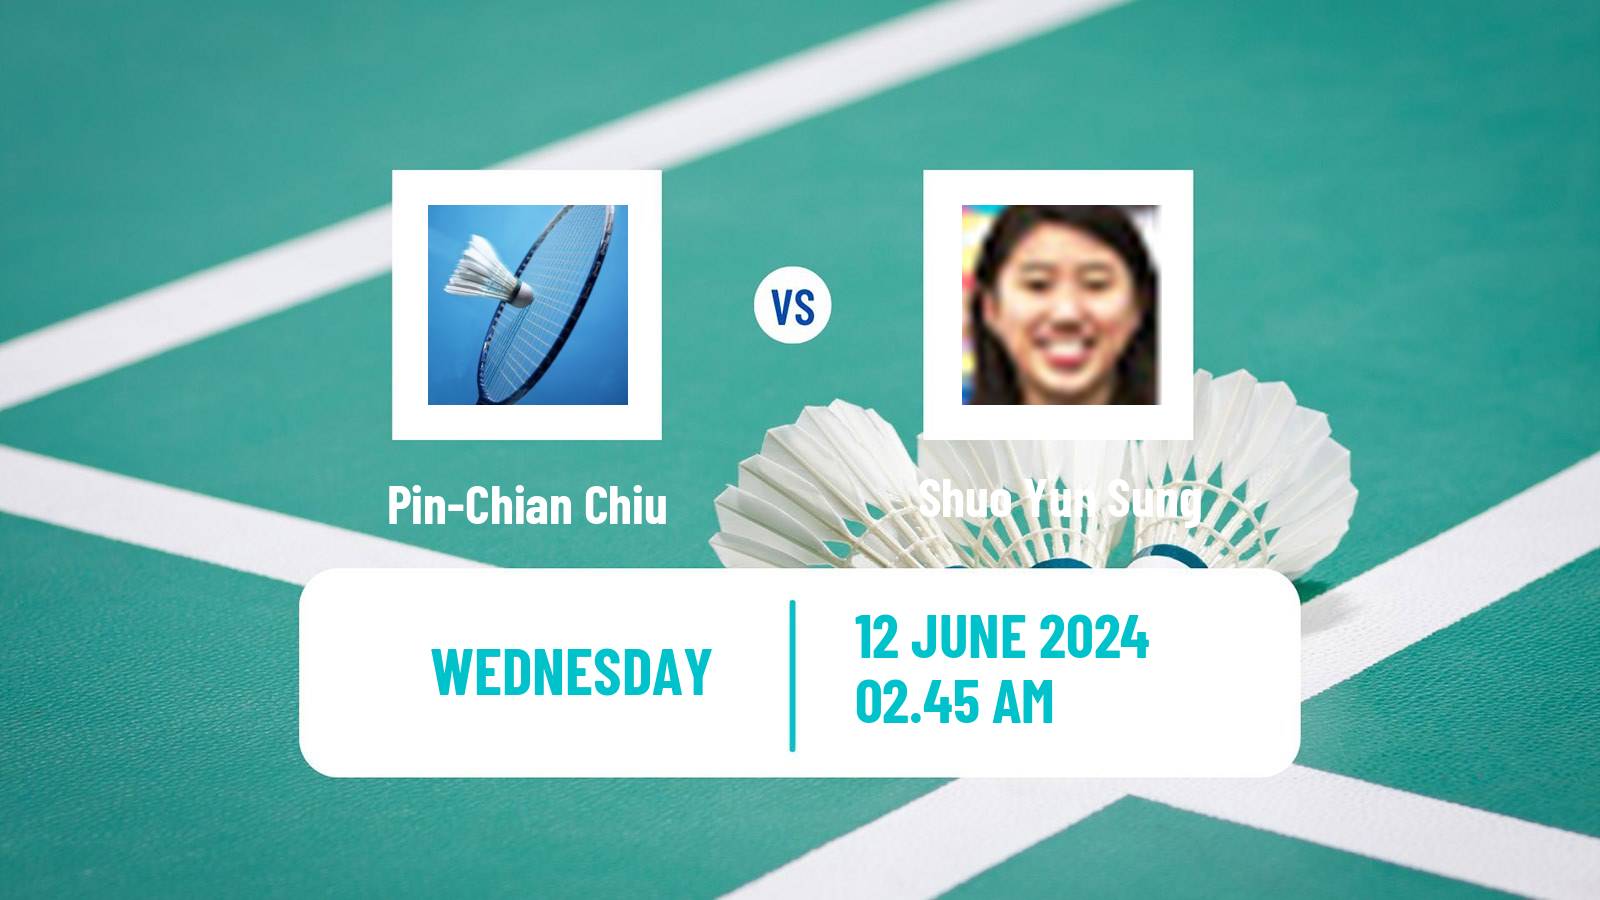 Badminton BWF World Tour Australian Open Women Pin-Chian Chiu - Shuo Yun Sung